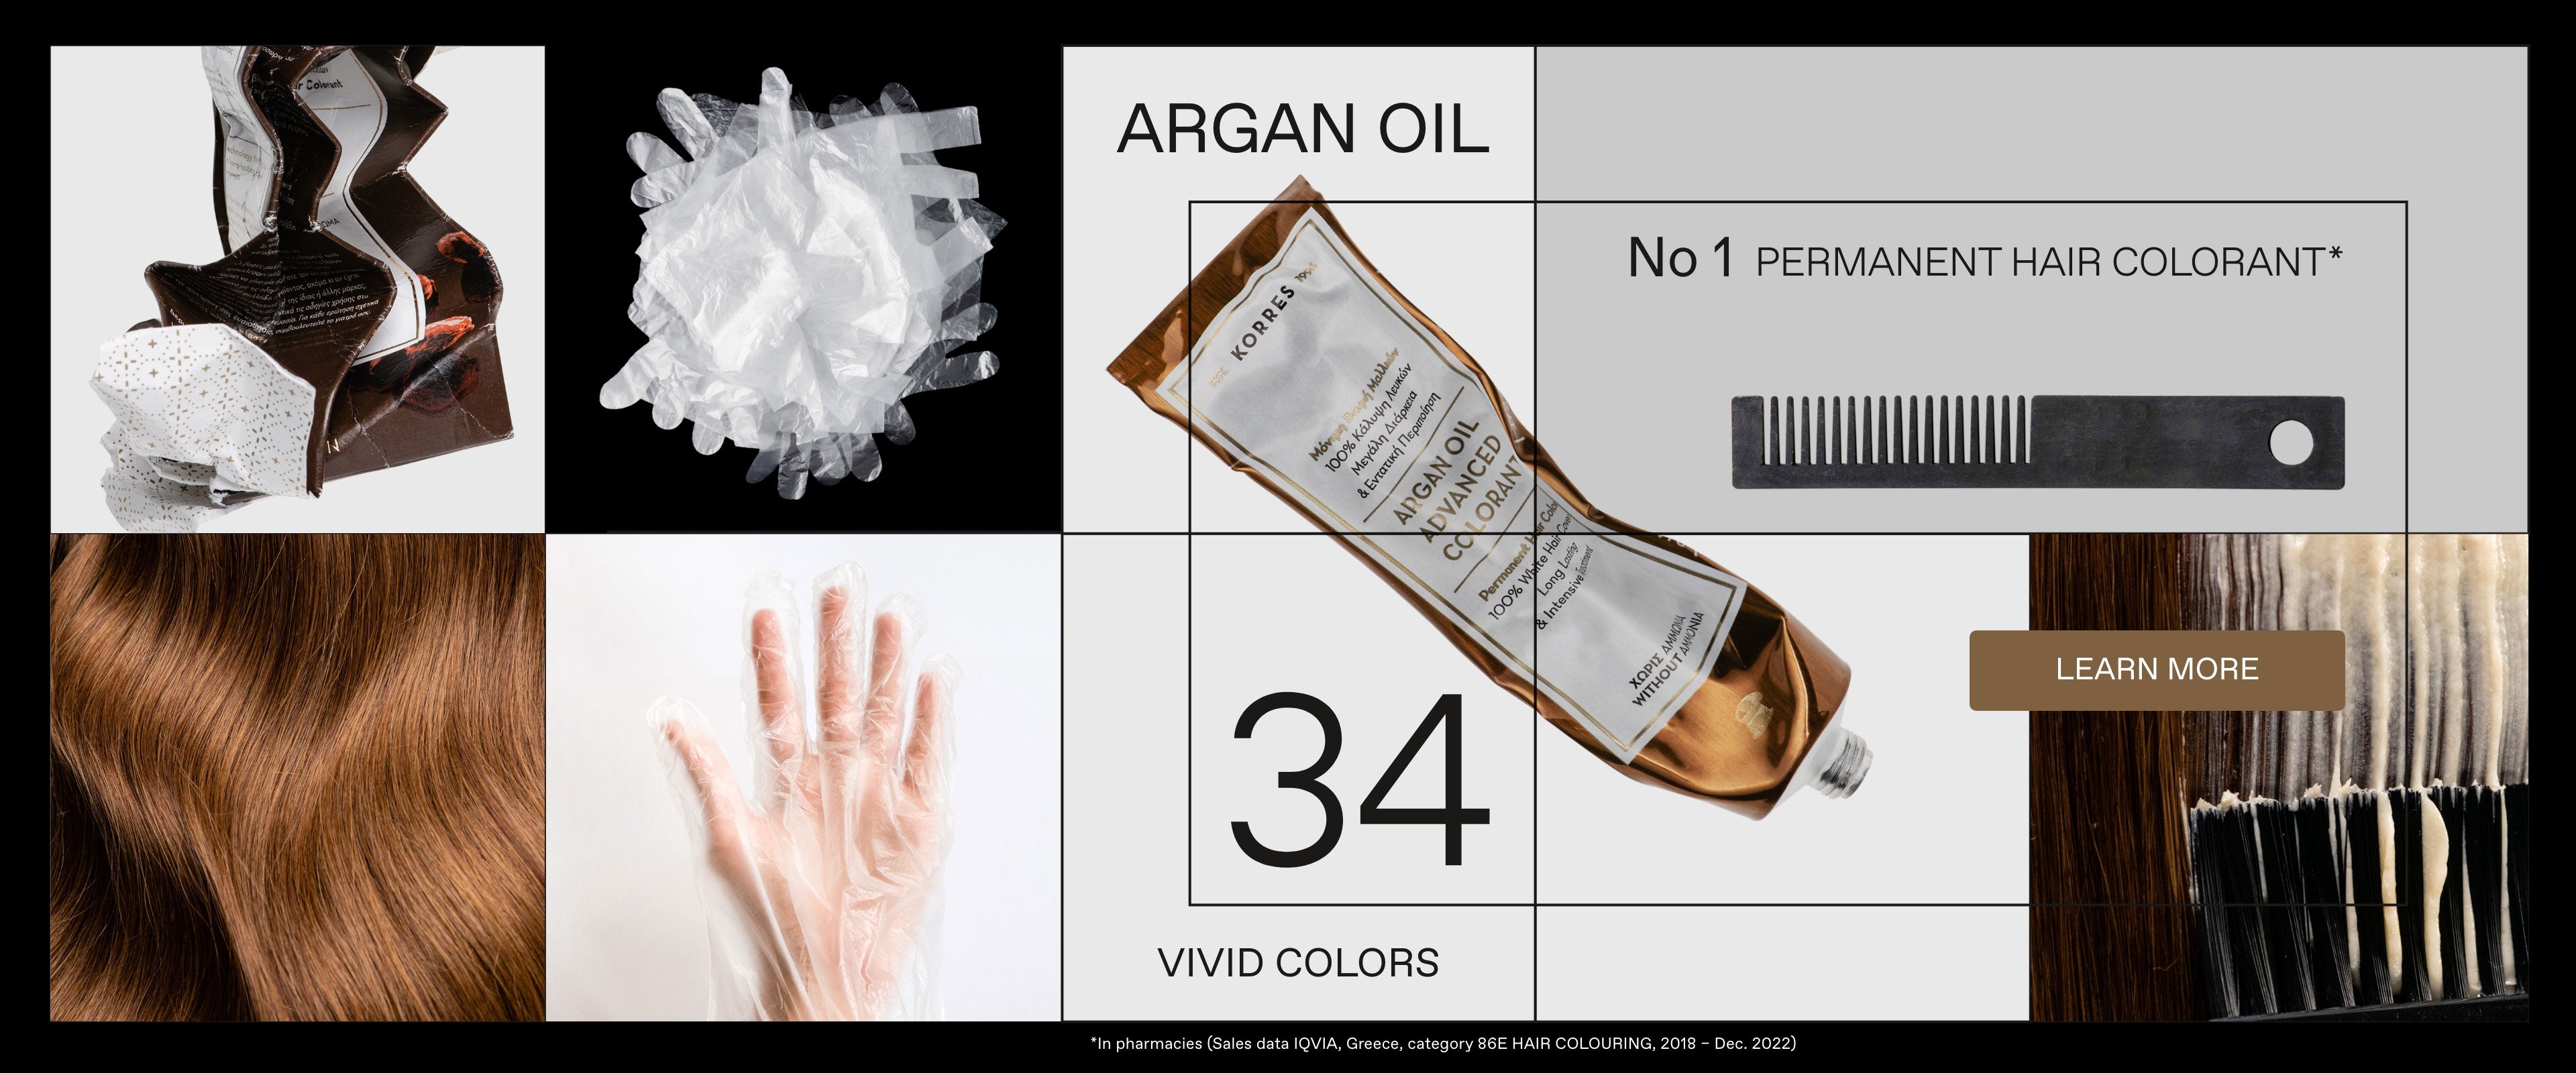 Argan oil No 1 Permanent Hair colorant